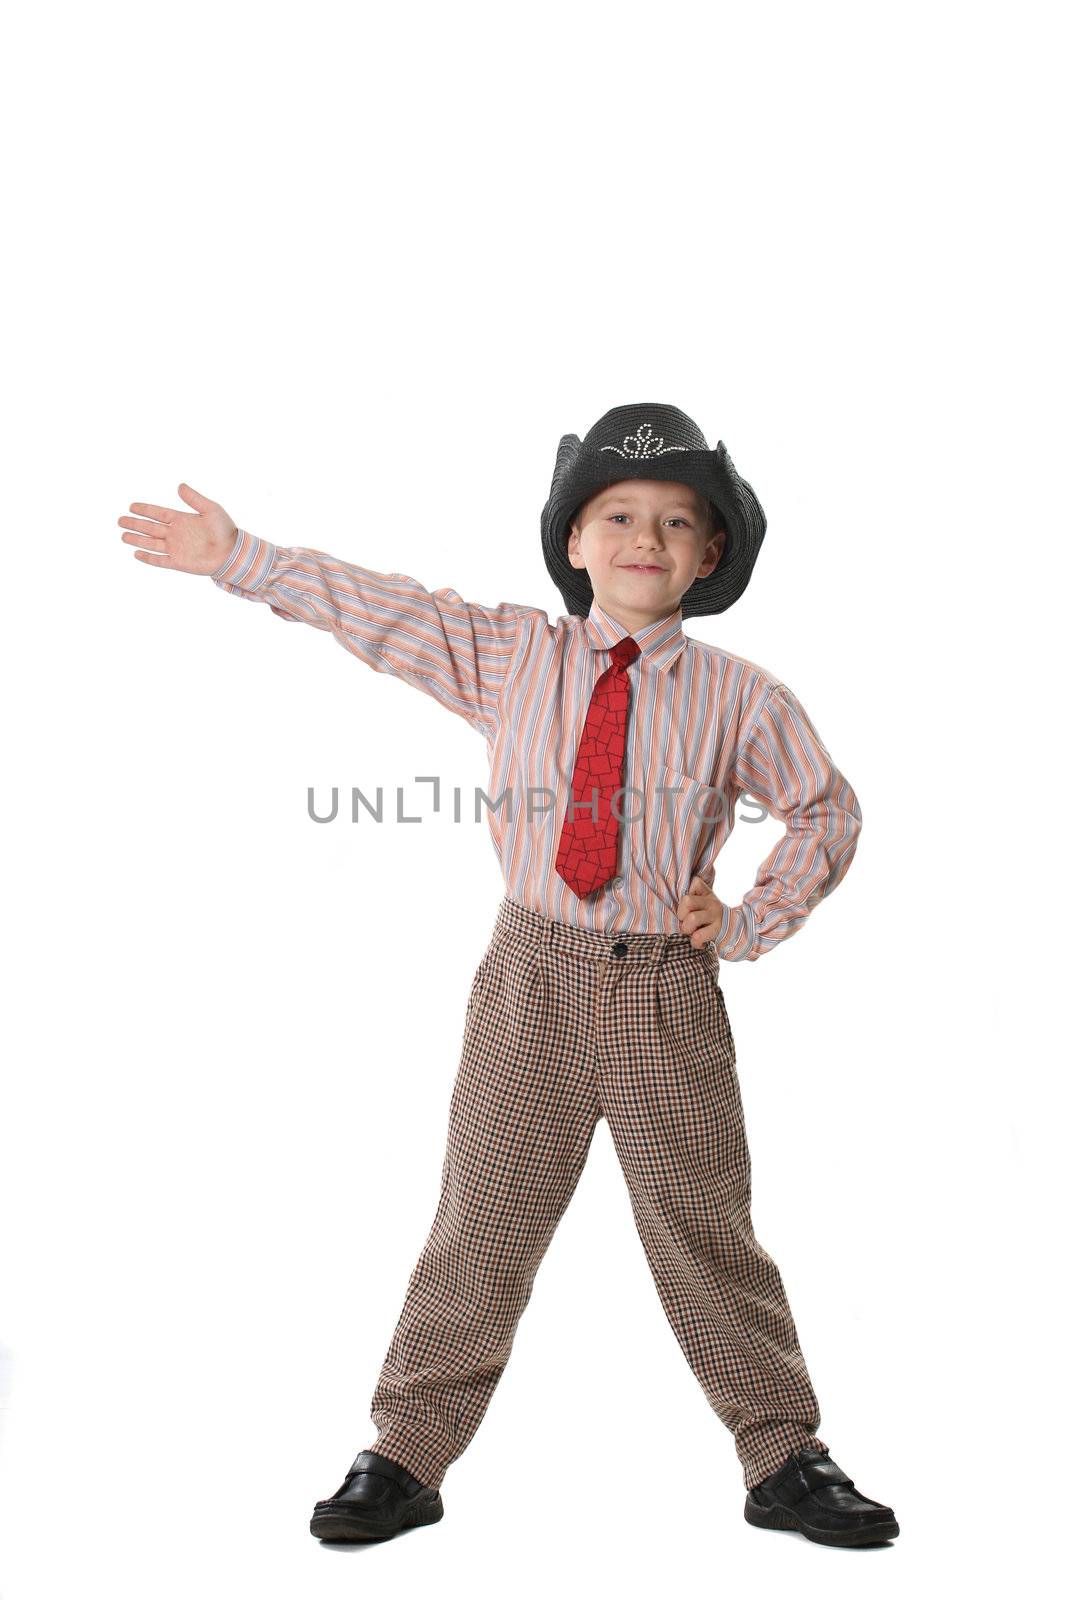 The boy in a tie and a cowboy's hat on a white background